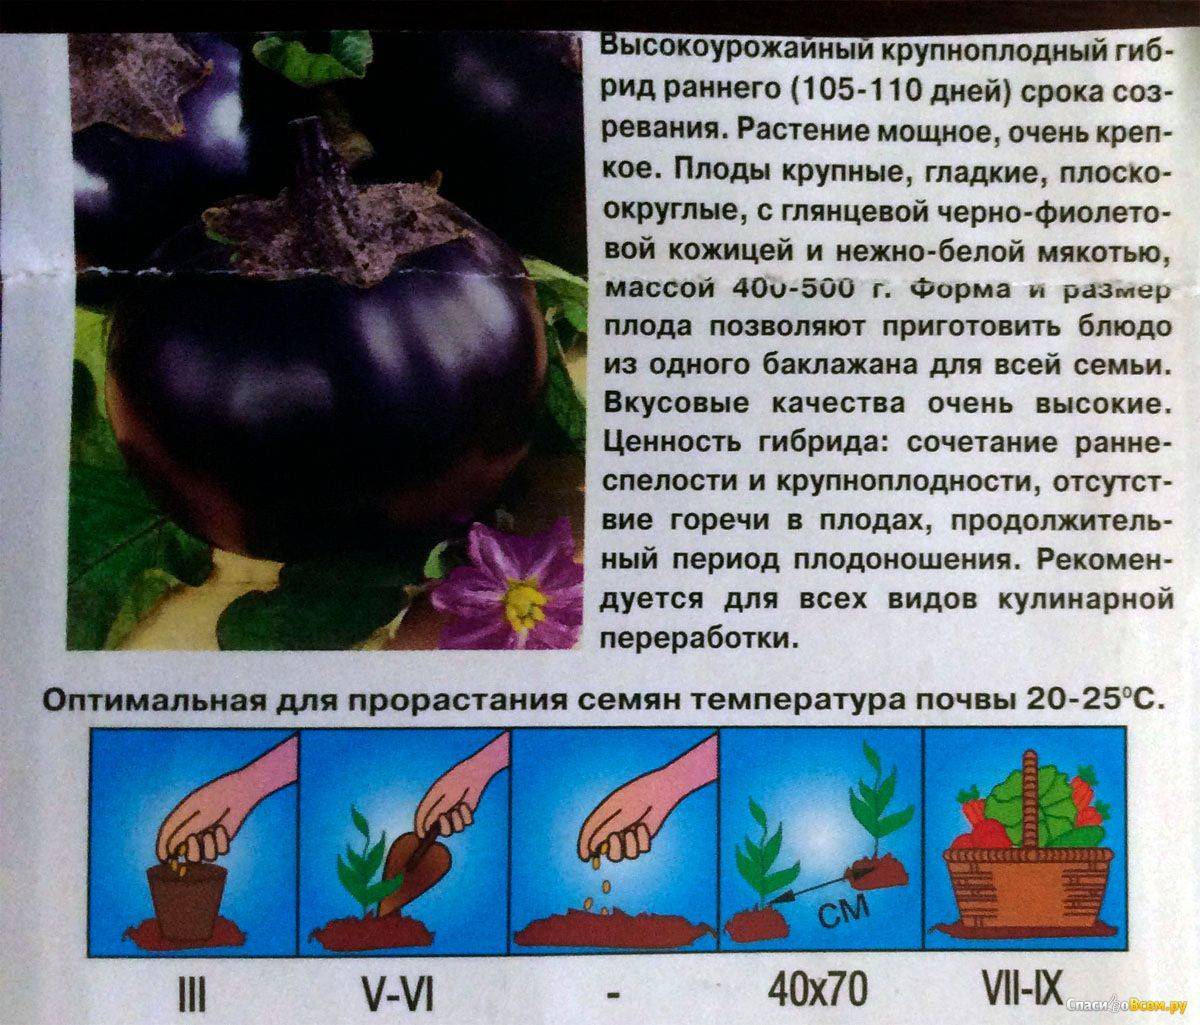 Баклажан щелкунчик: описание и характеристики сорта, выращивание и уход, отзывы с фото